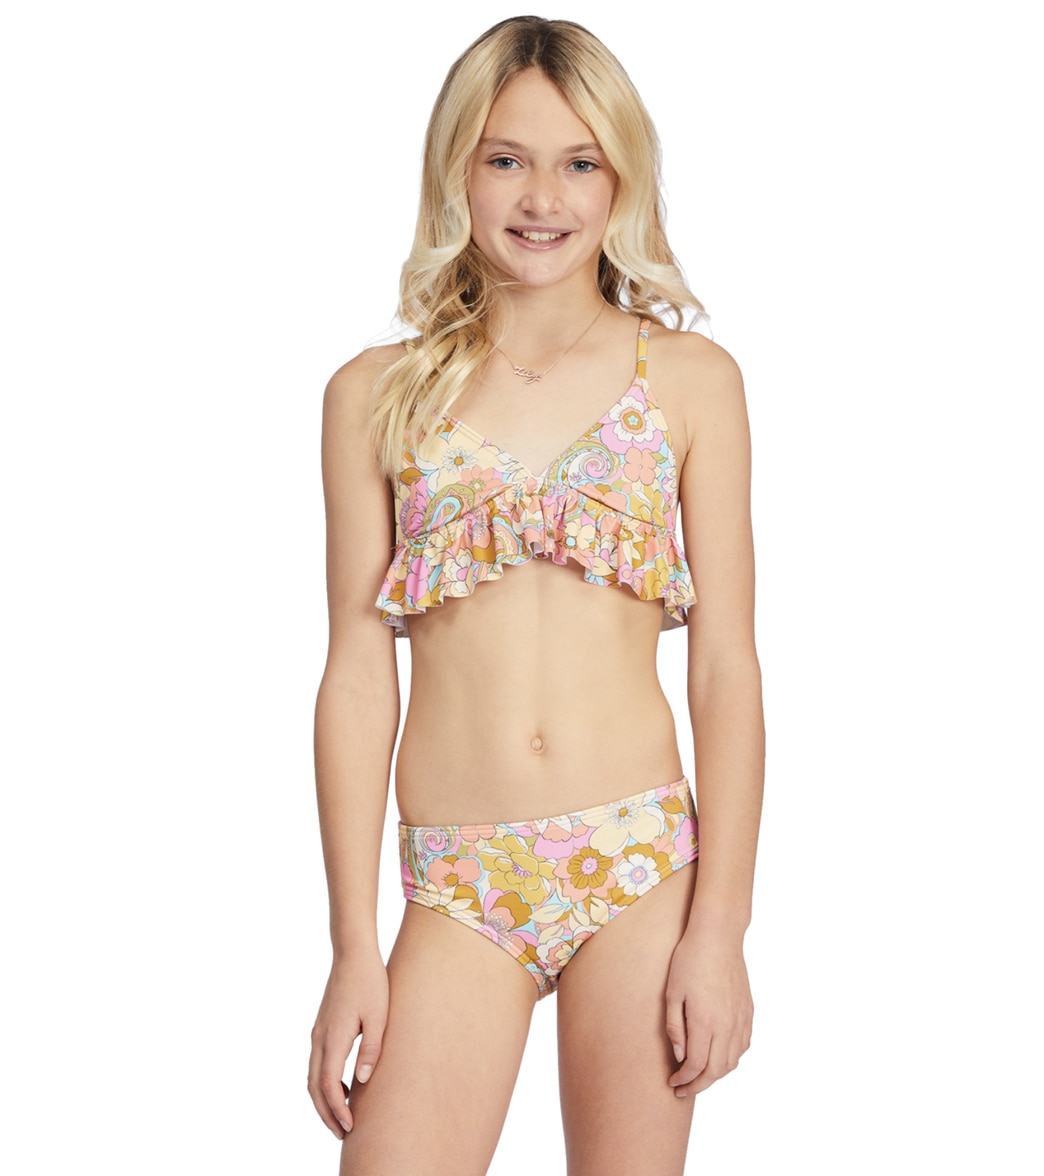 Billabong Girls' Aint She A Beaut Ruffle Two Piece Bikini Set - Multi 10 - Swimoutlet.com